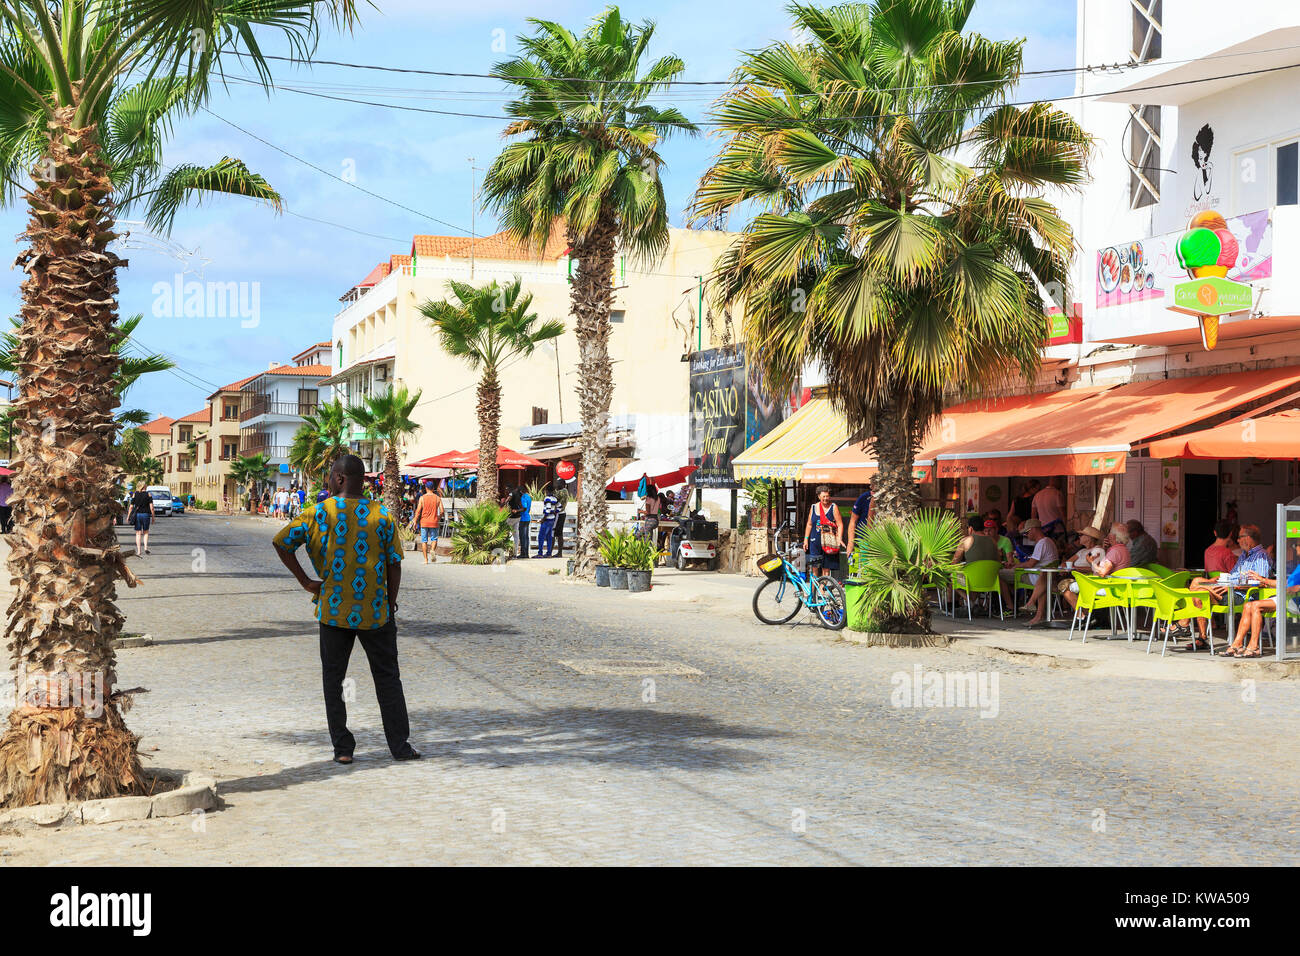 Strada principale nella località turistica di Santa Maria, Sal, Salina, Capo Verde, Africa con negozi e bancarelle di souvenir e ristoranti, Foto Stock